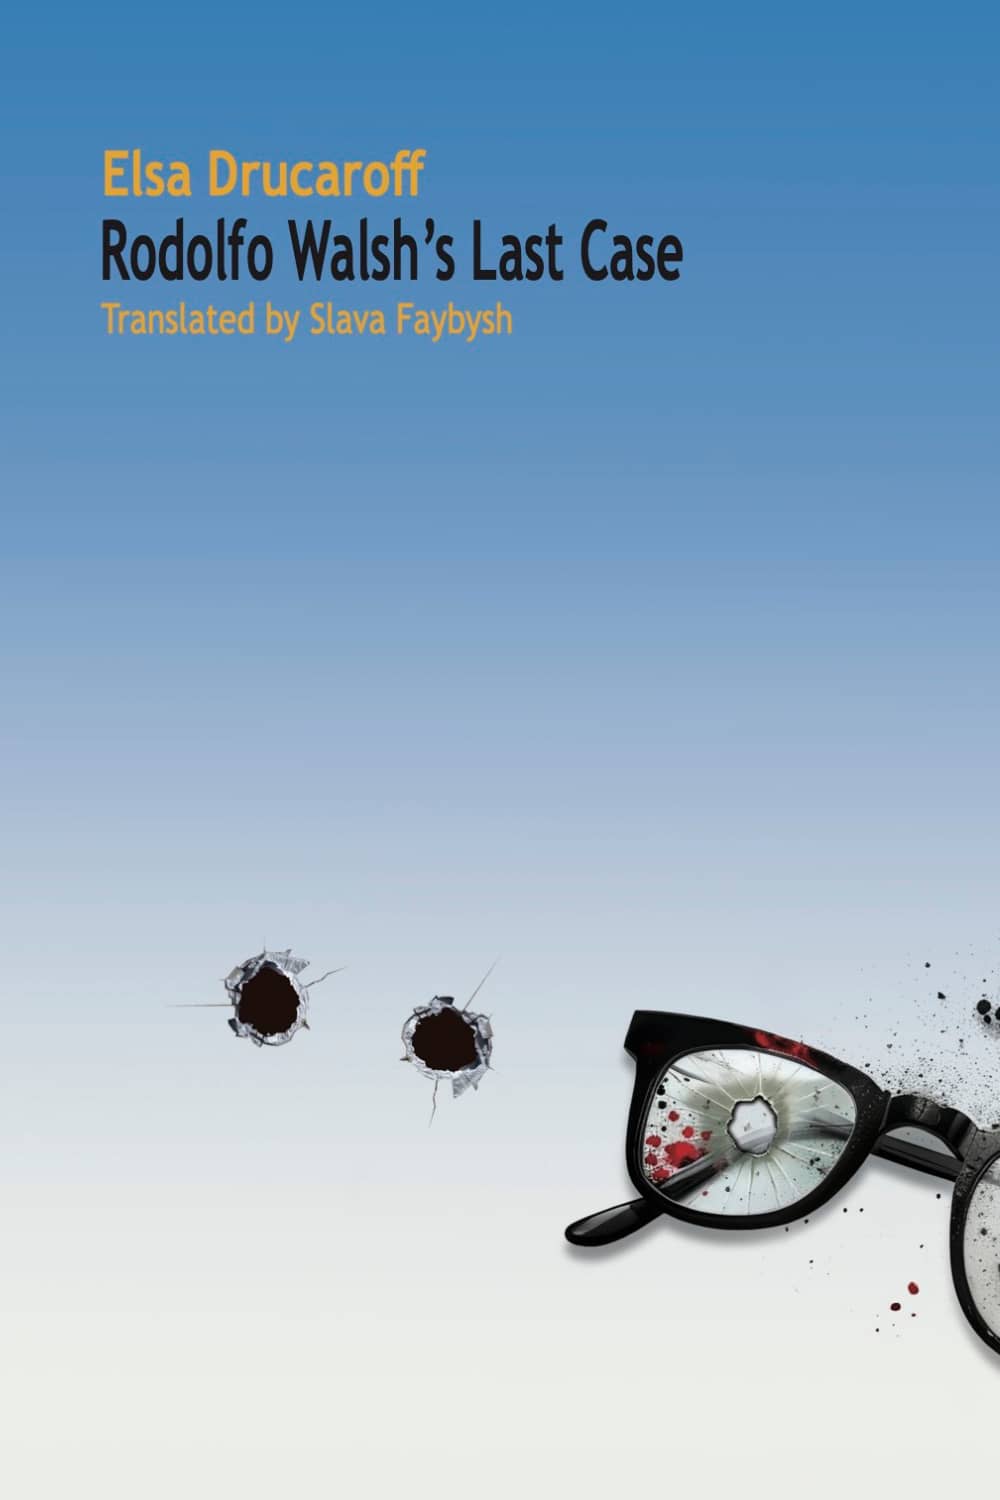 Rodolfo Walsh's Last Case by Elsa Drucaroff